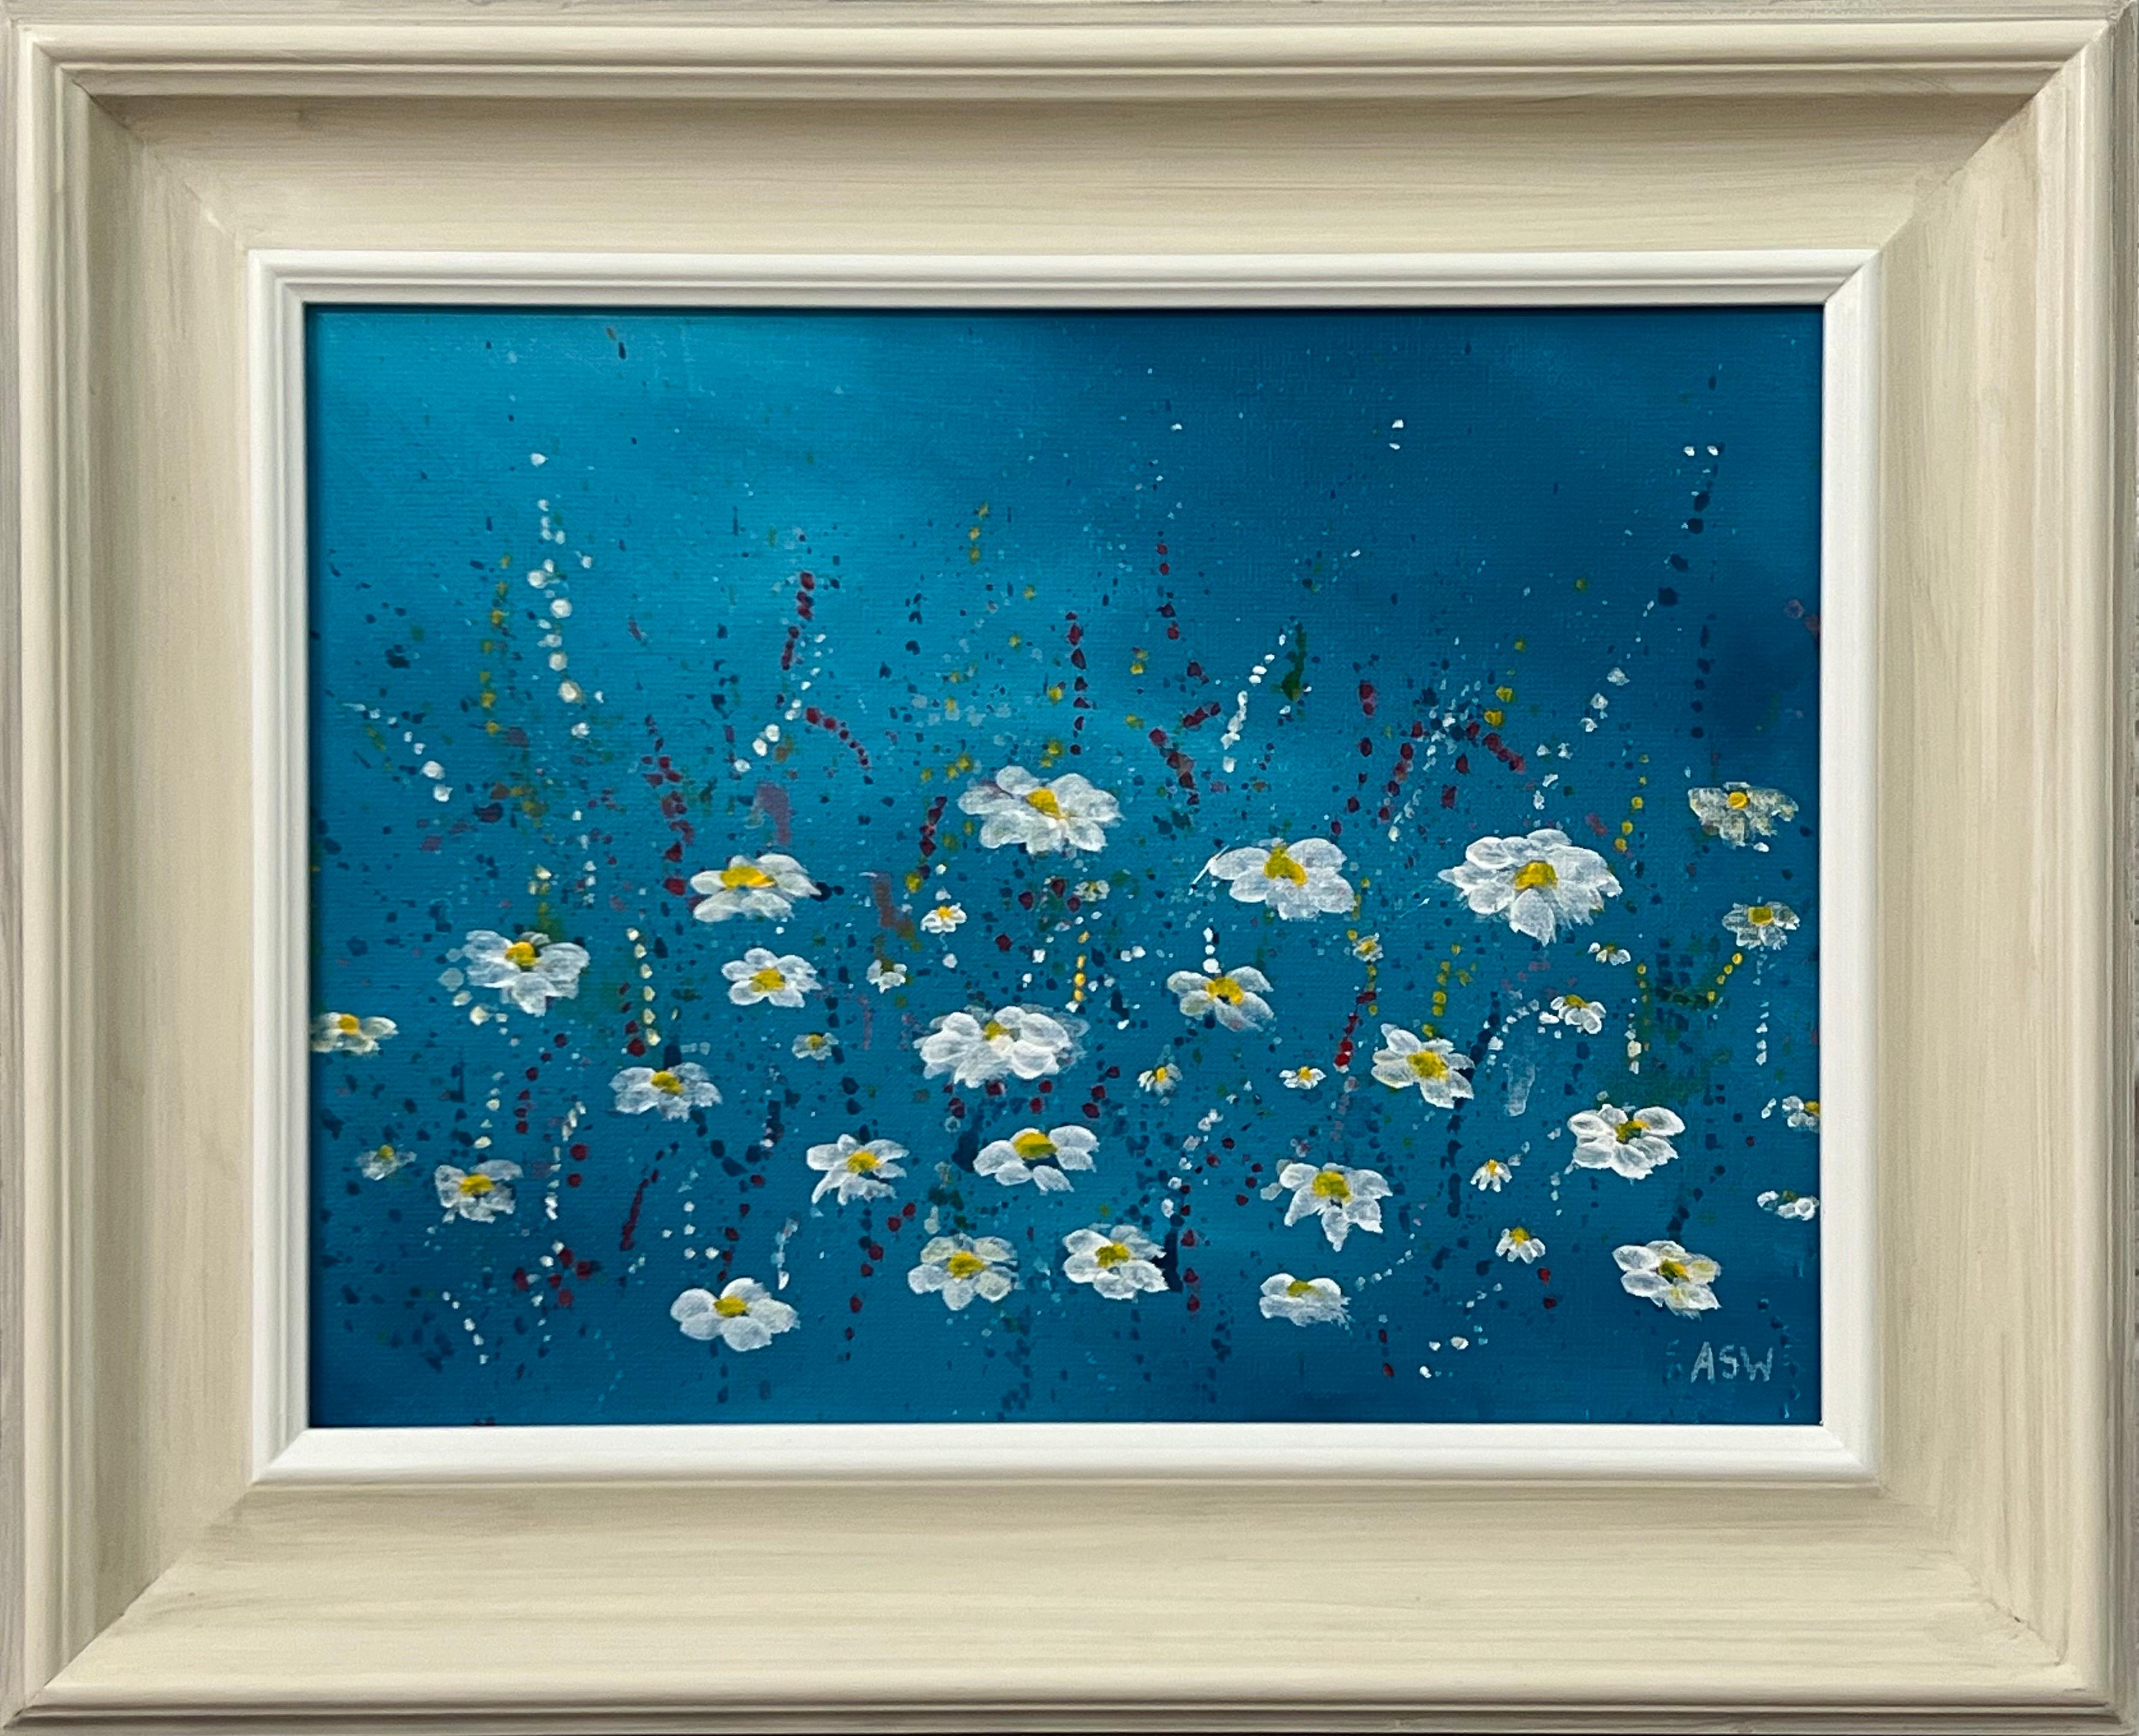 Abstract Drawing Angela Wakefield - Fleurs abstraites en marguerite blanche sur fond turquoise par un artiste contemporain